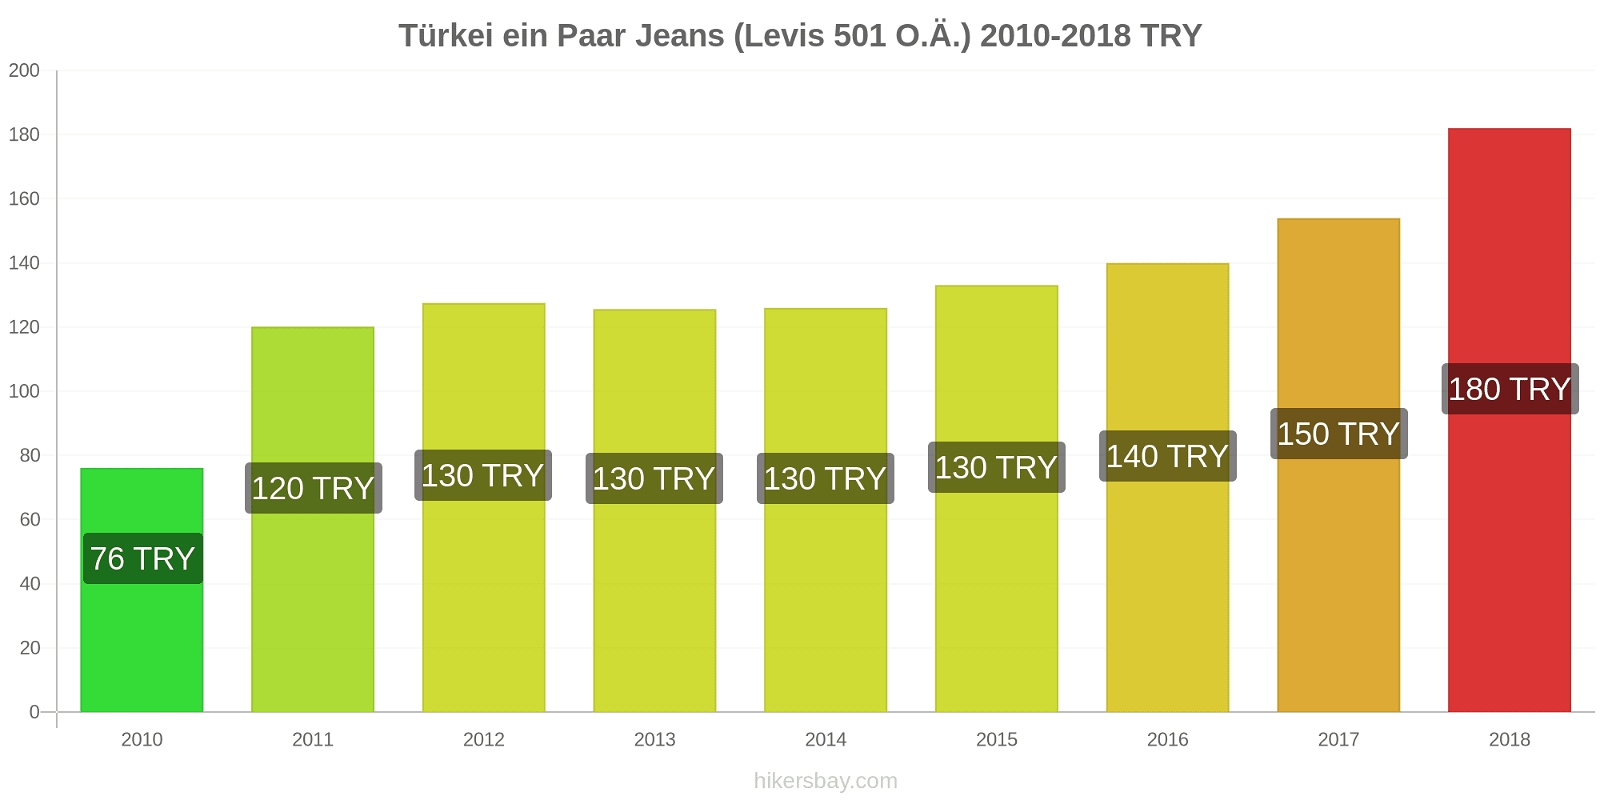 Türkei Preisänderungen 1 Paar Jeans (Levis 501 oder ähnlich) hikersbay.com